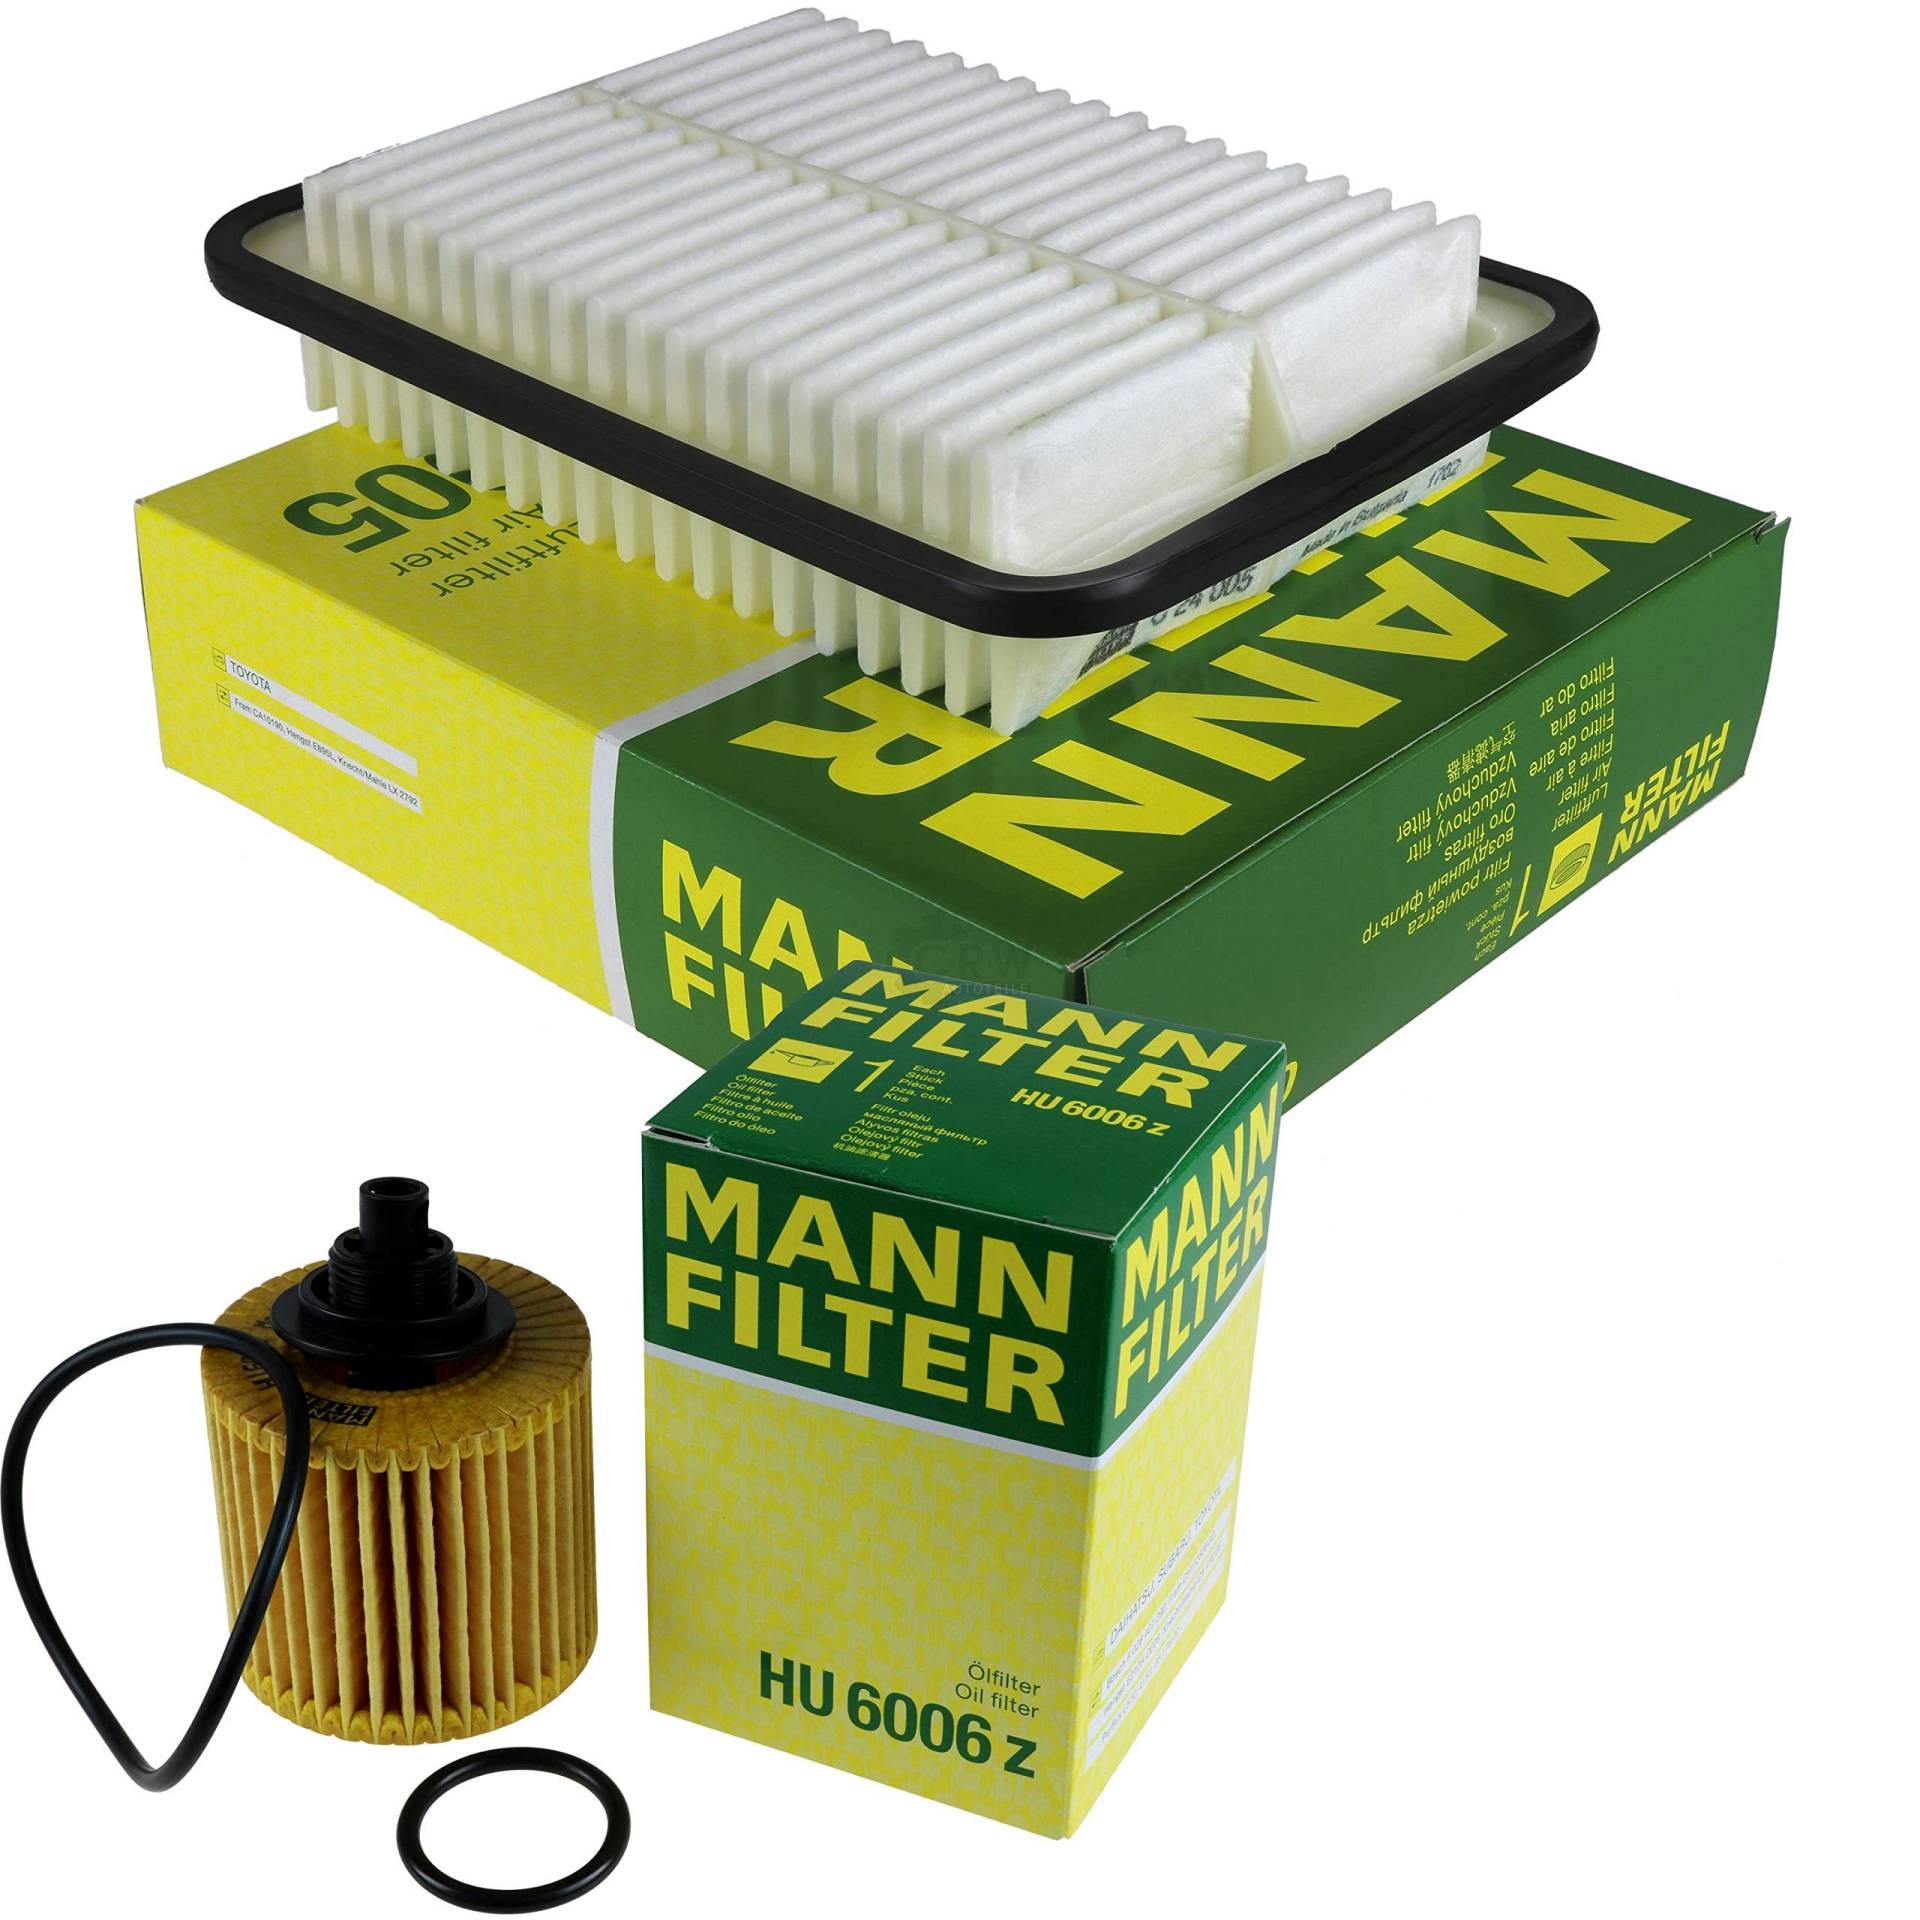 MANN-FILTER Inspektions Set Inspektionspaket Luftfilter Ölfilter von Diederichs